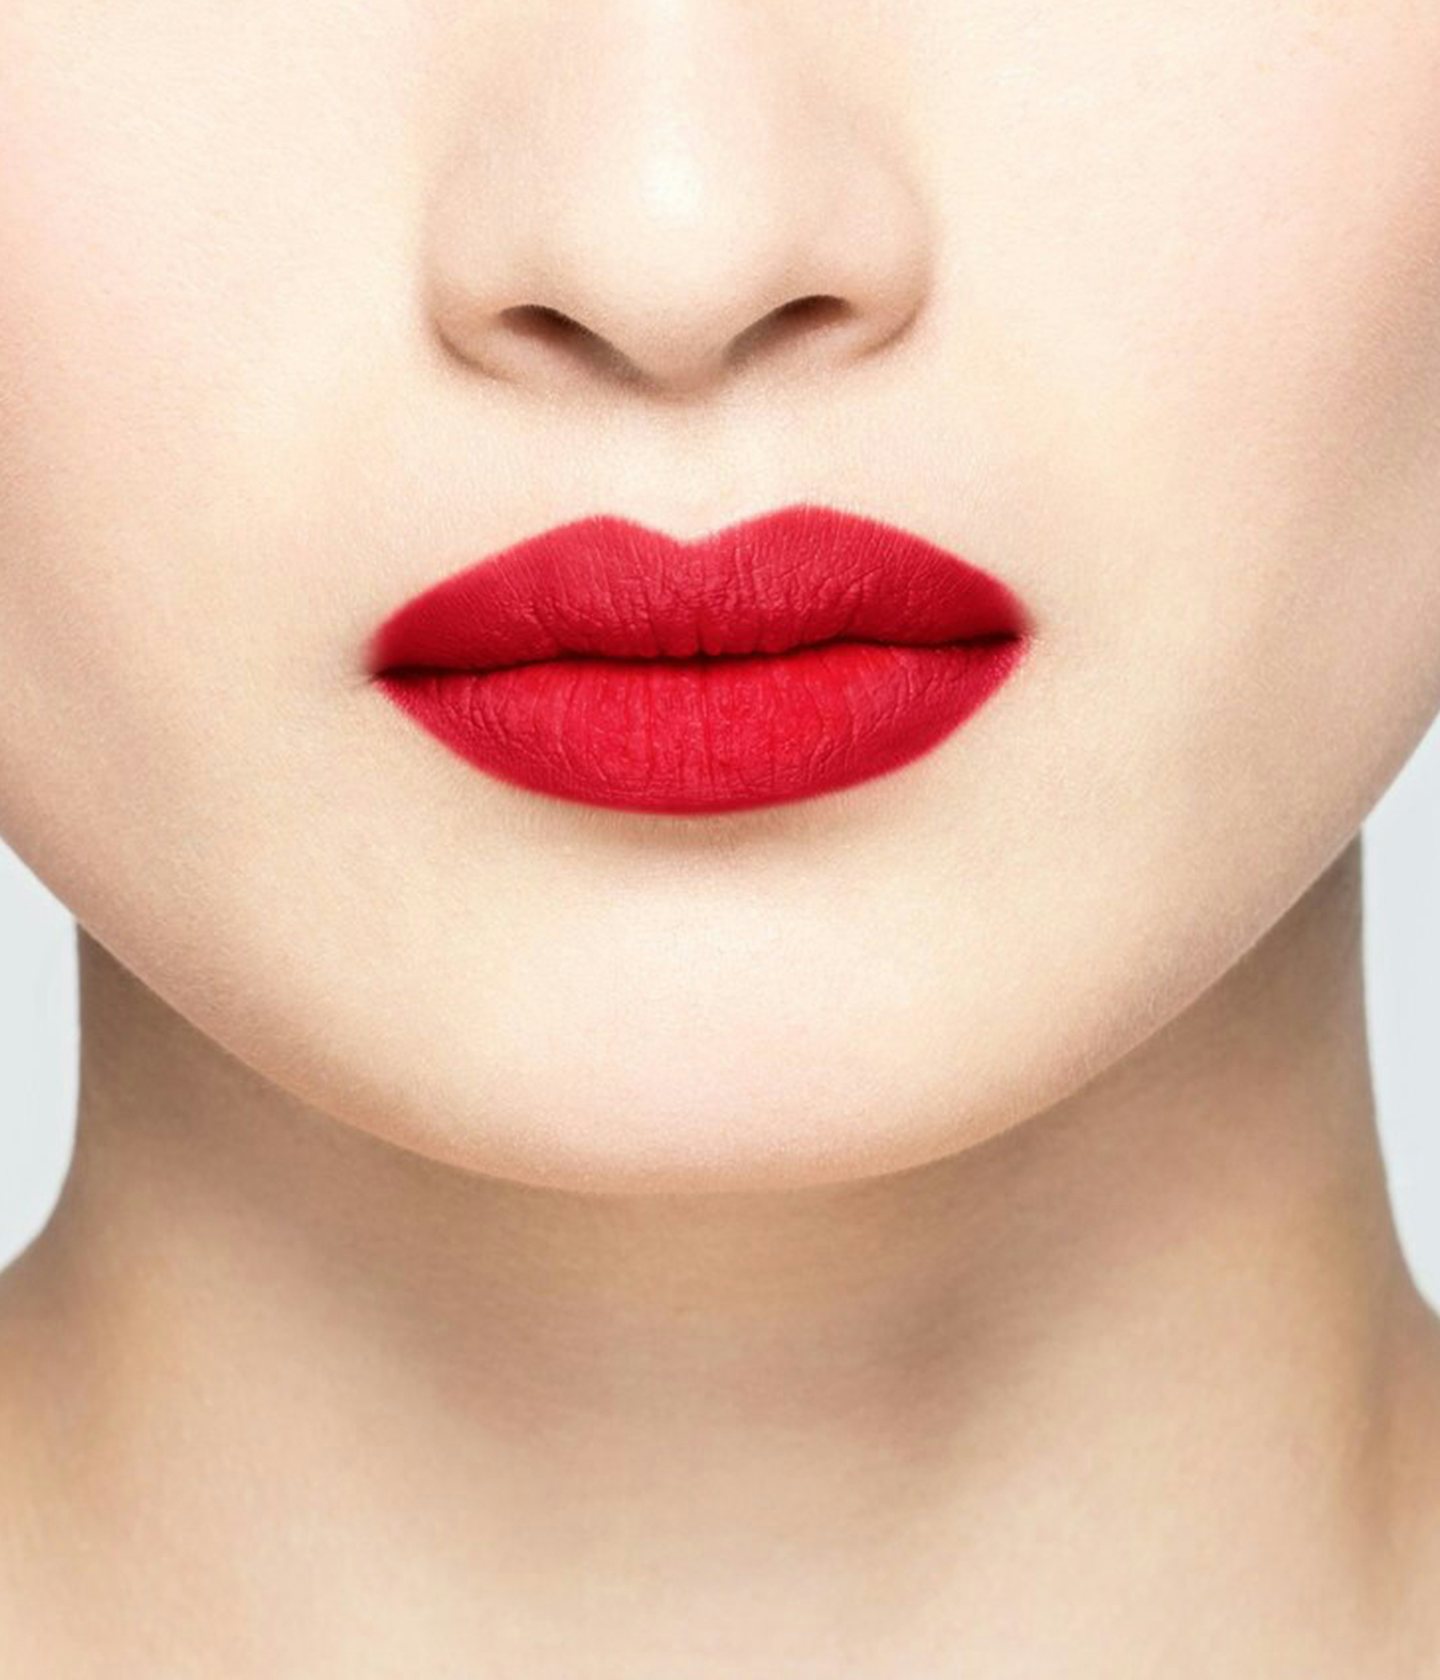  La bouche rouge rouge à lèvres 70s America sur les lèvres d’un mannequin asiatique 